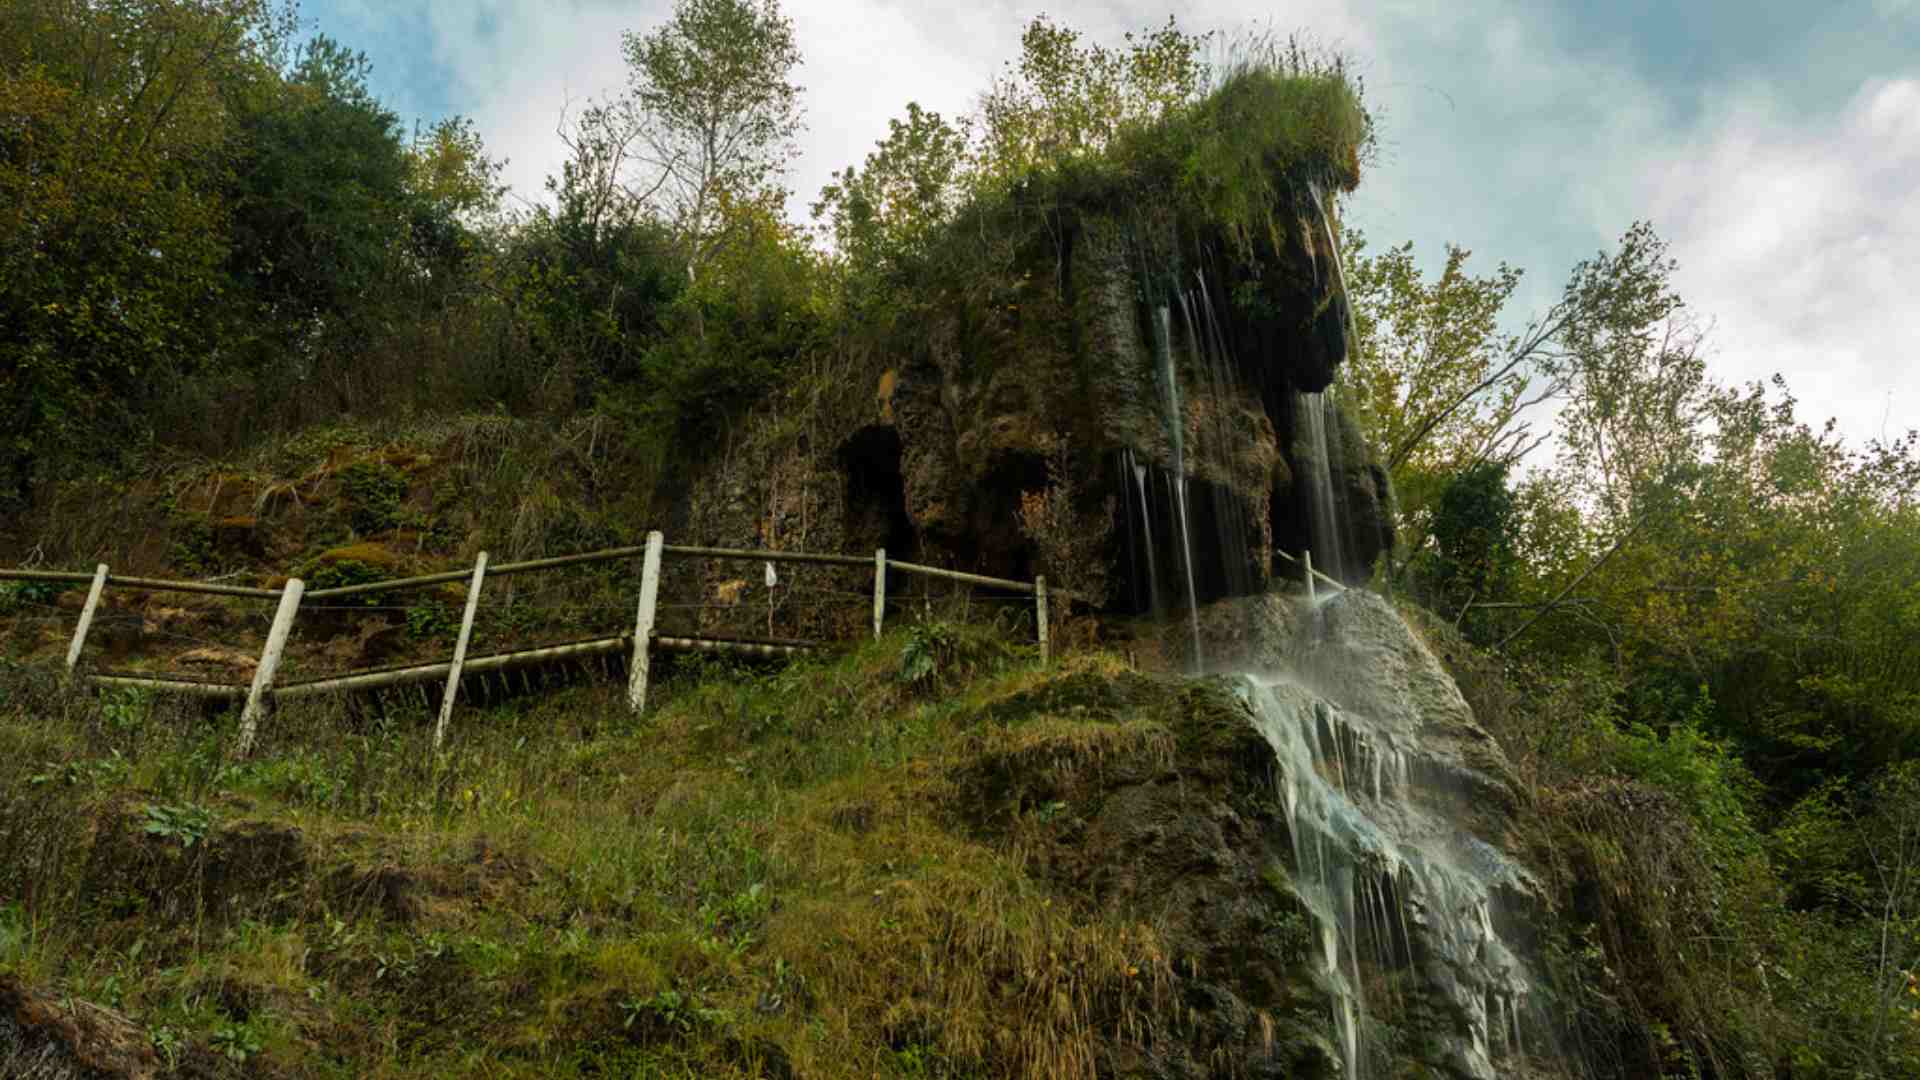 La ruta de senderisme catalana on passaràs per dins d'una roca, travessaràs ponts i veuràs cascades